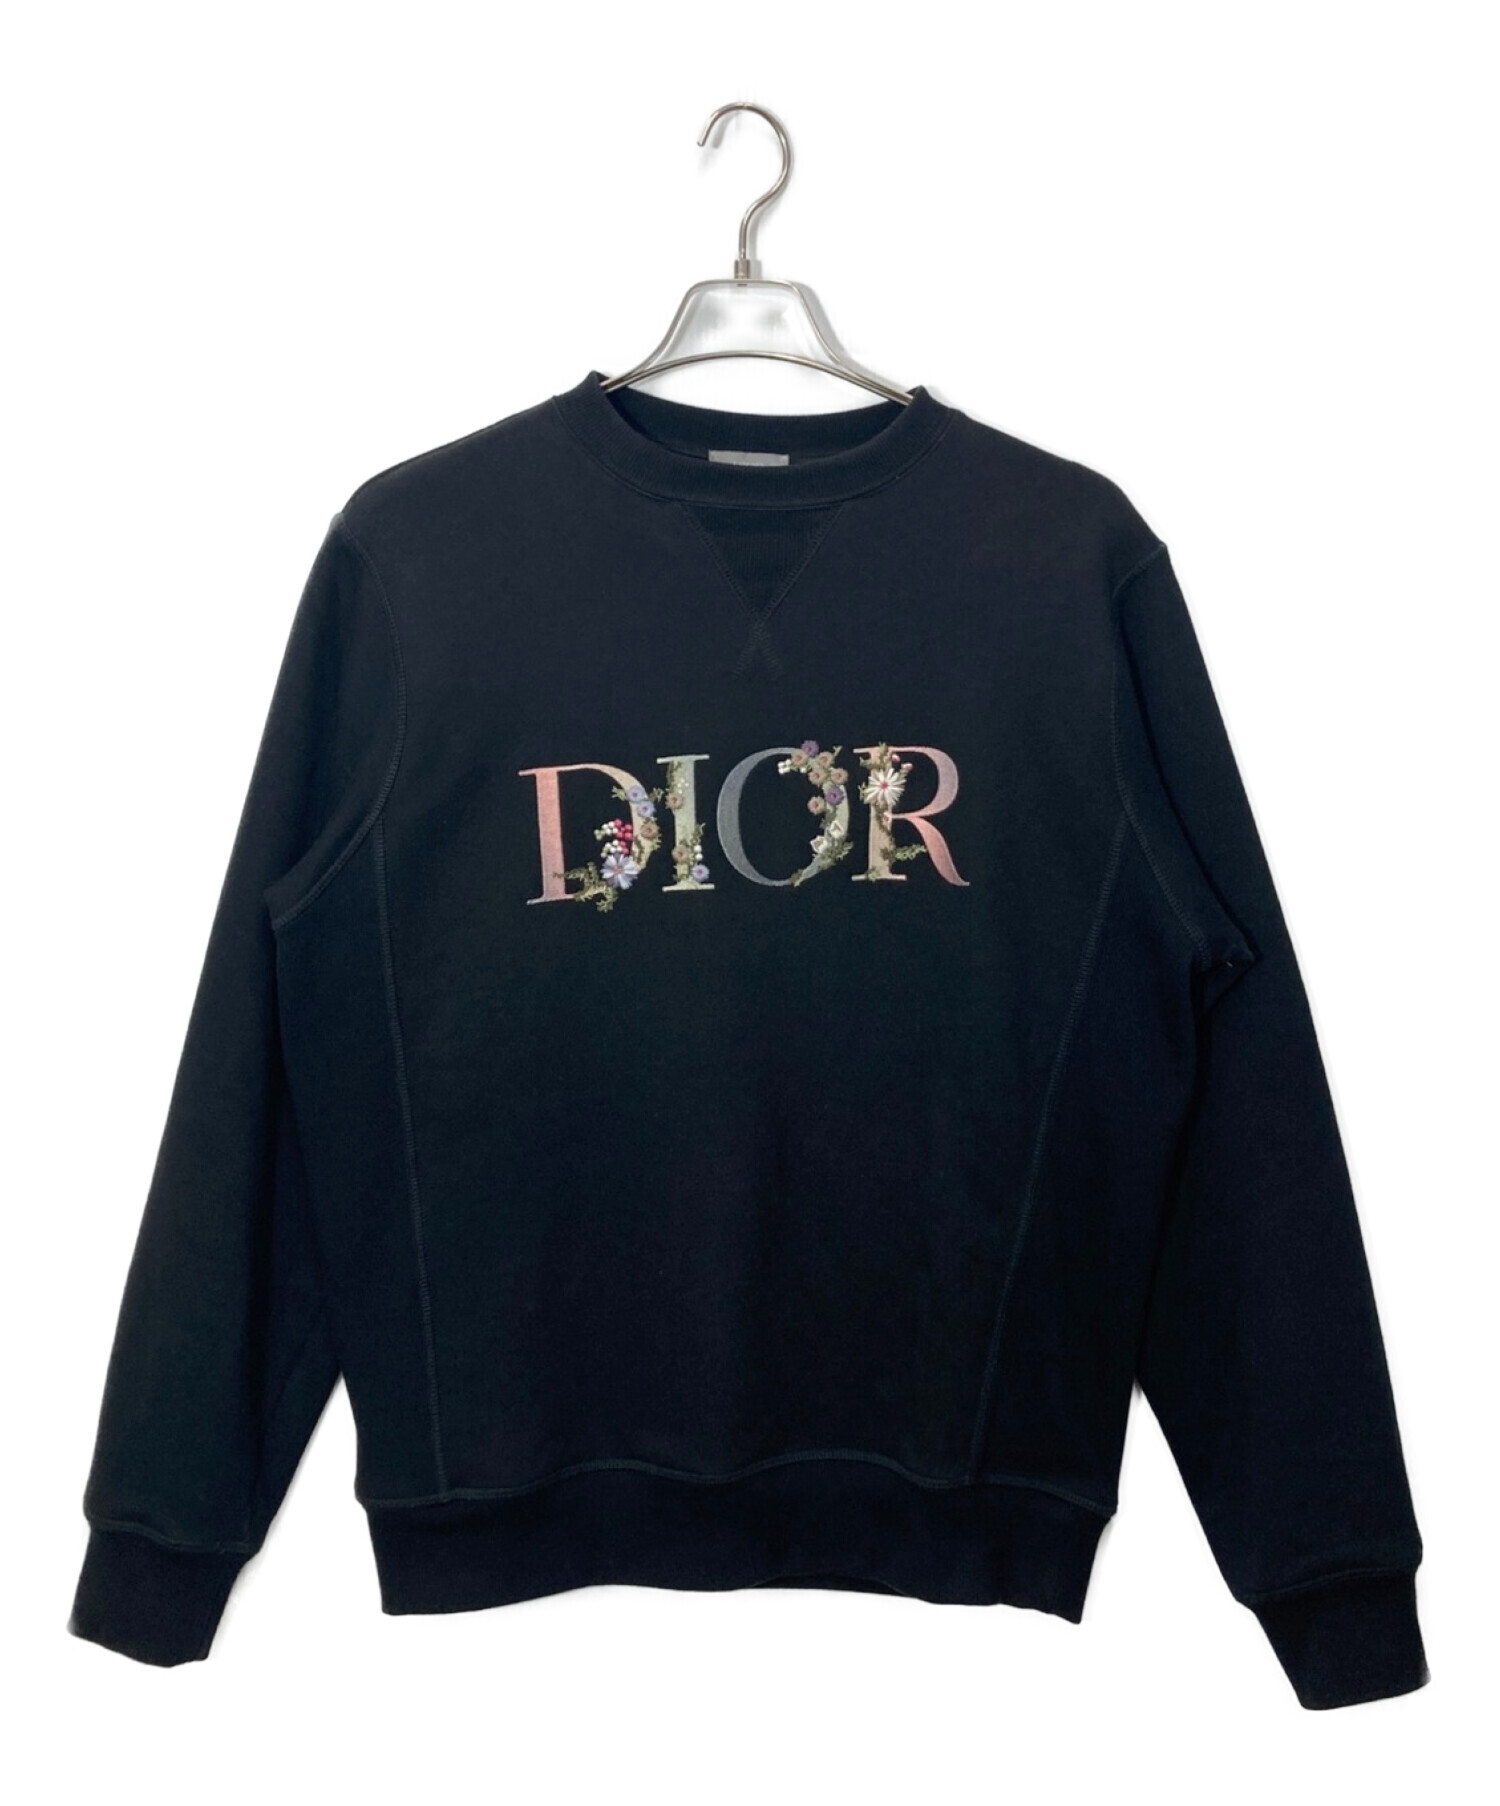 中古・古着通販】Dior (ディオール) フラワーロゴ刺繍スウェット 